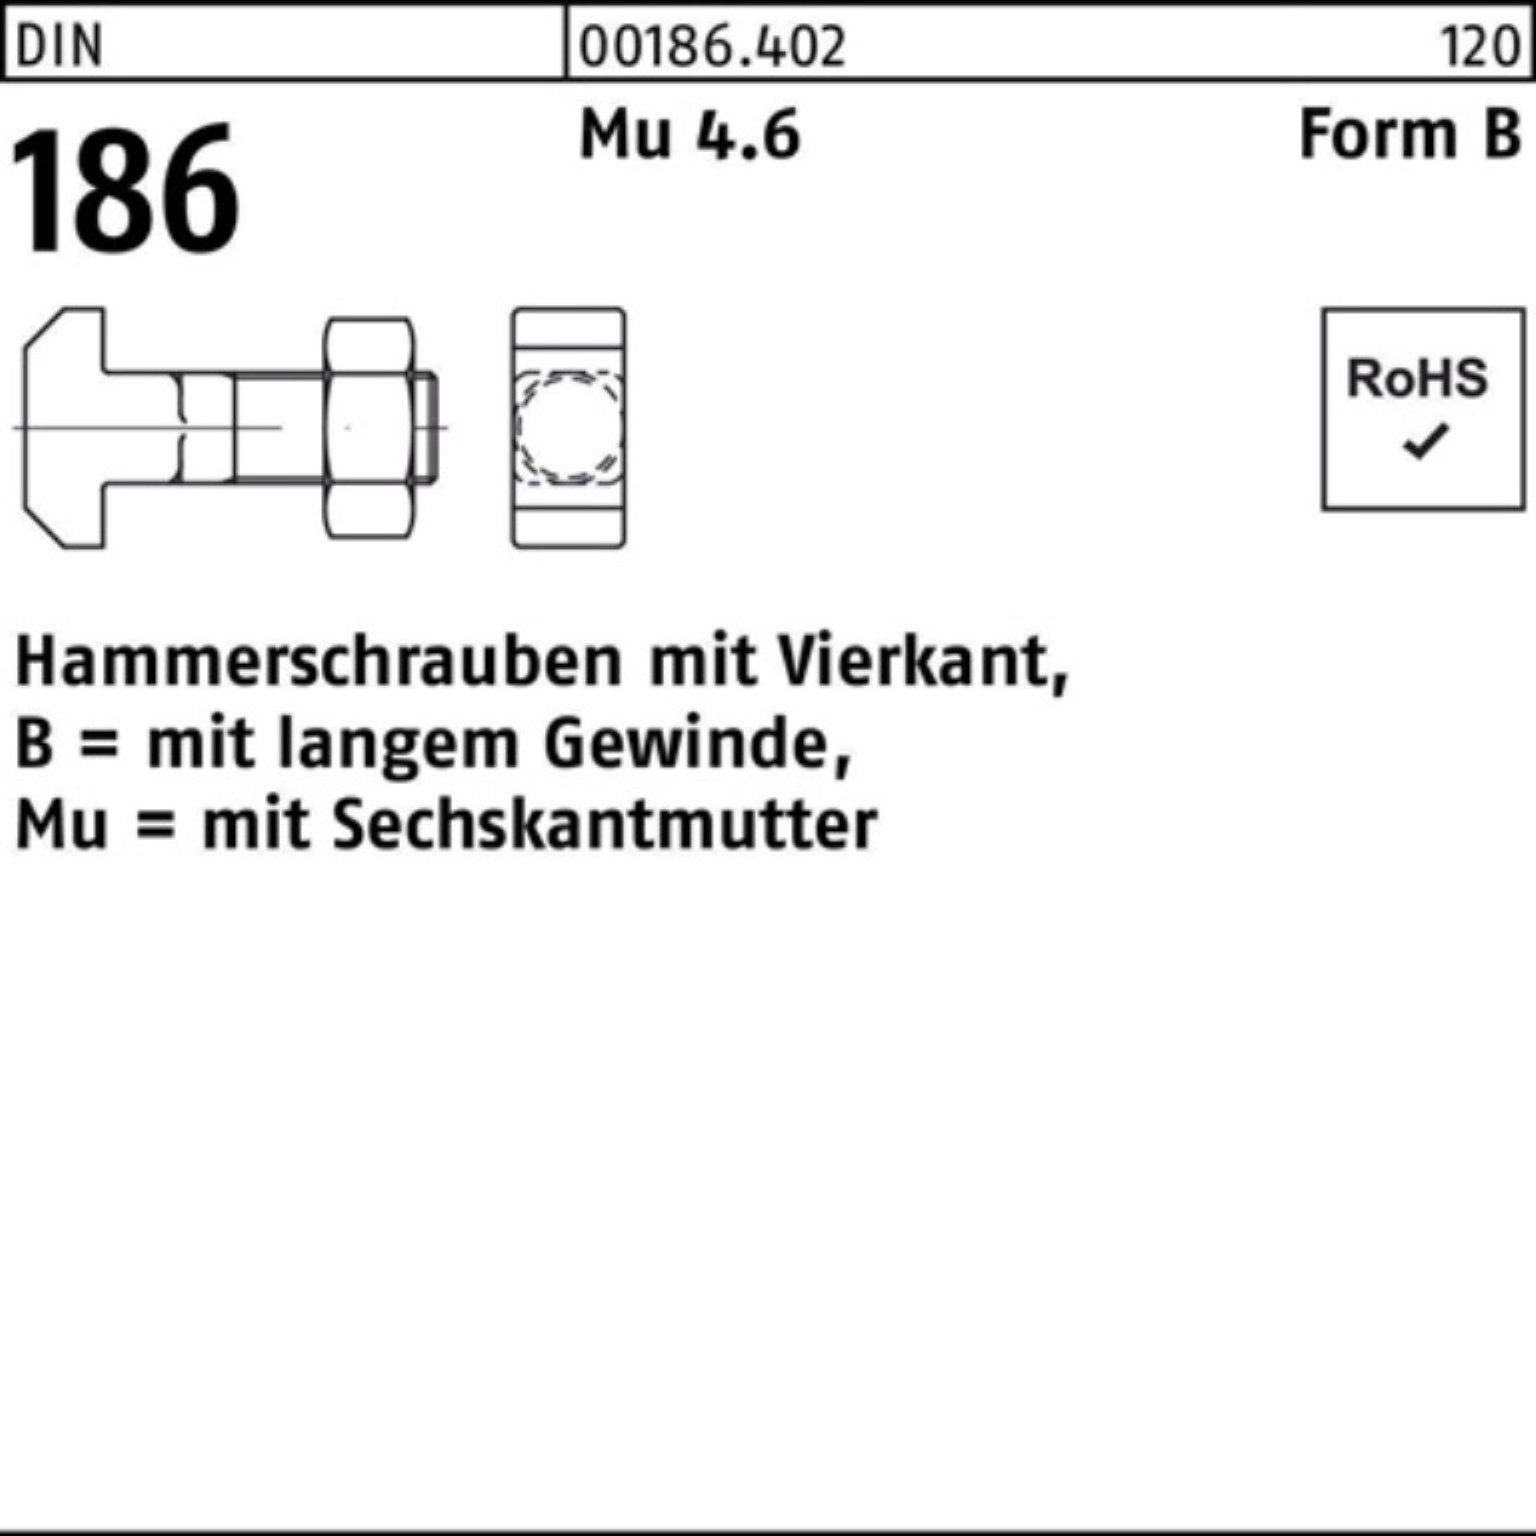 Pack Reyher Hammerschraube DIN 16x 100er BM FormB Schraube Vierkant 6-ktmutter 186 90